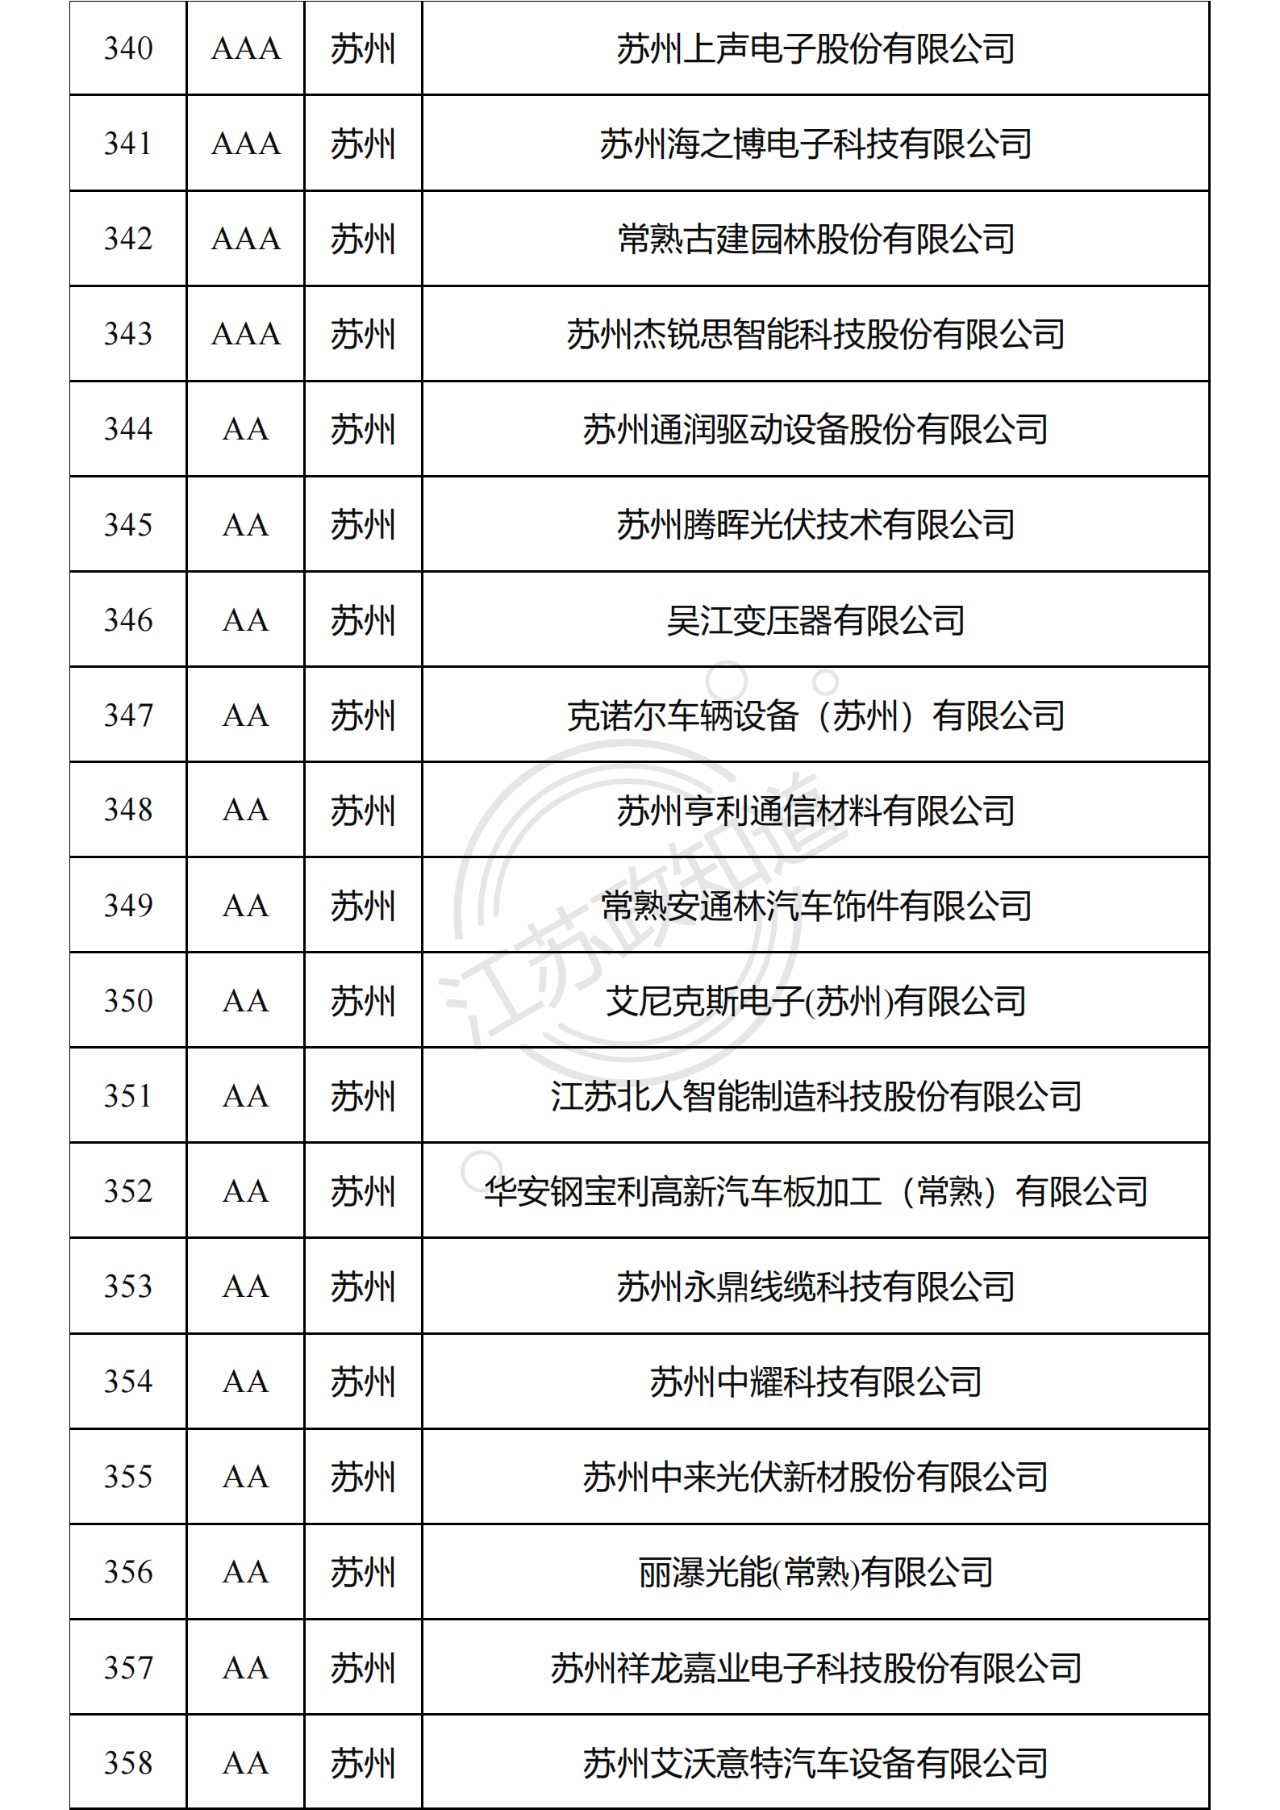 2022年度江苏省两化融合管理体系贯标试点企业培育对象拟认定名单20.png